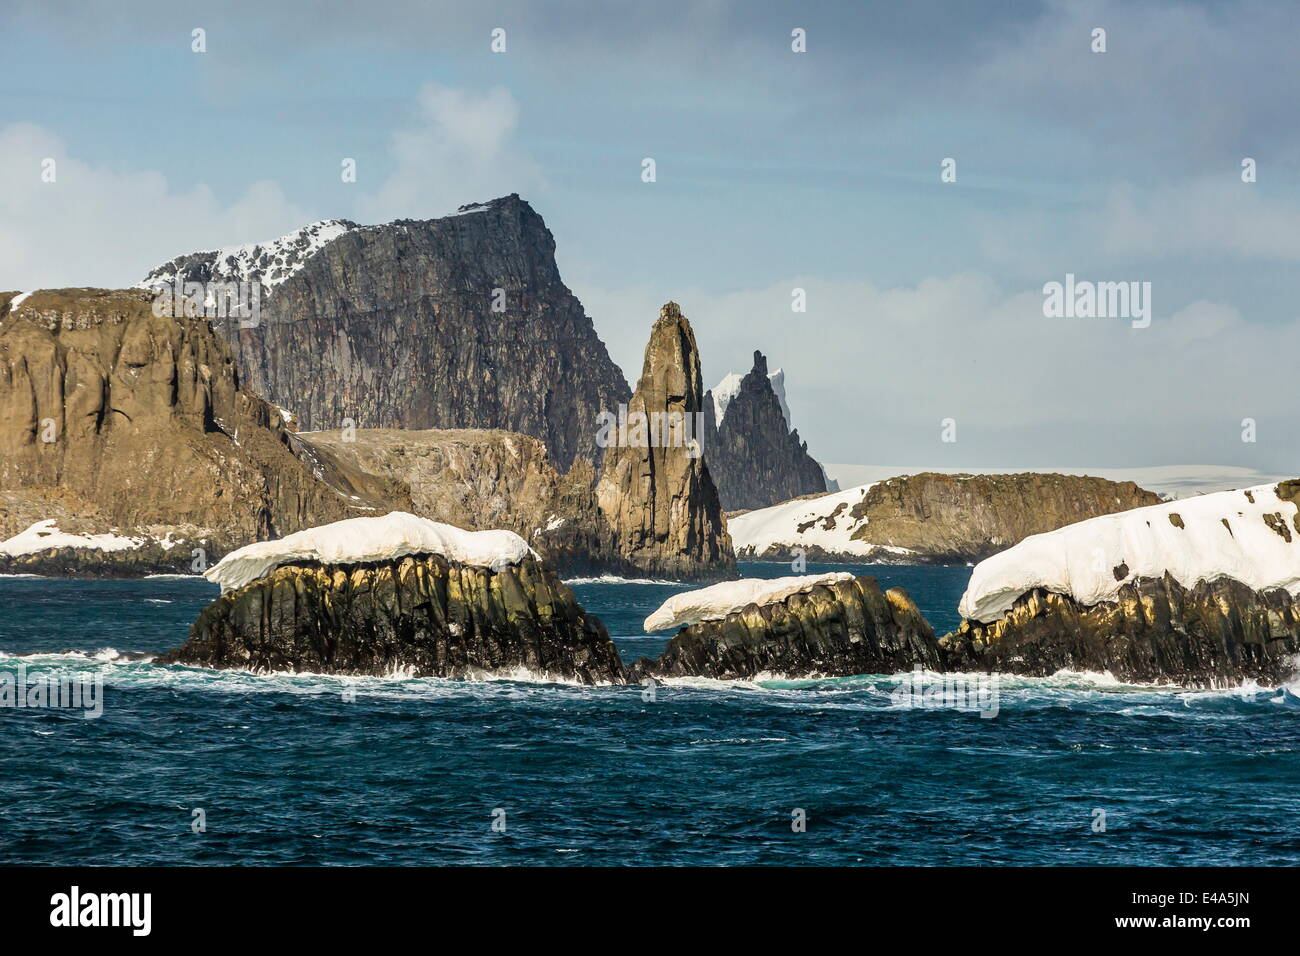 Dramatische Riffe und Inseln in Englisch Strait, South Shetland Island Group, Drake-Passage, Antarktis, Polarregionen Stockfoto